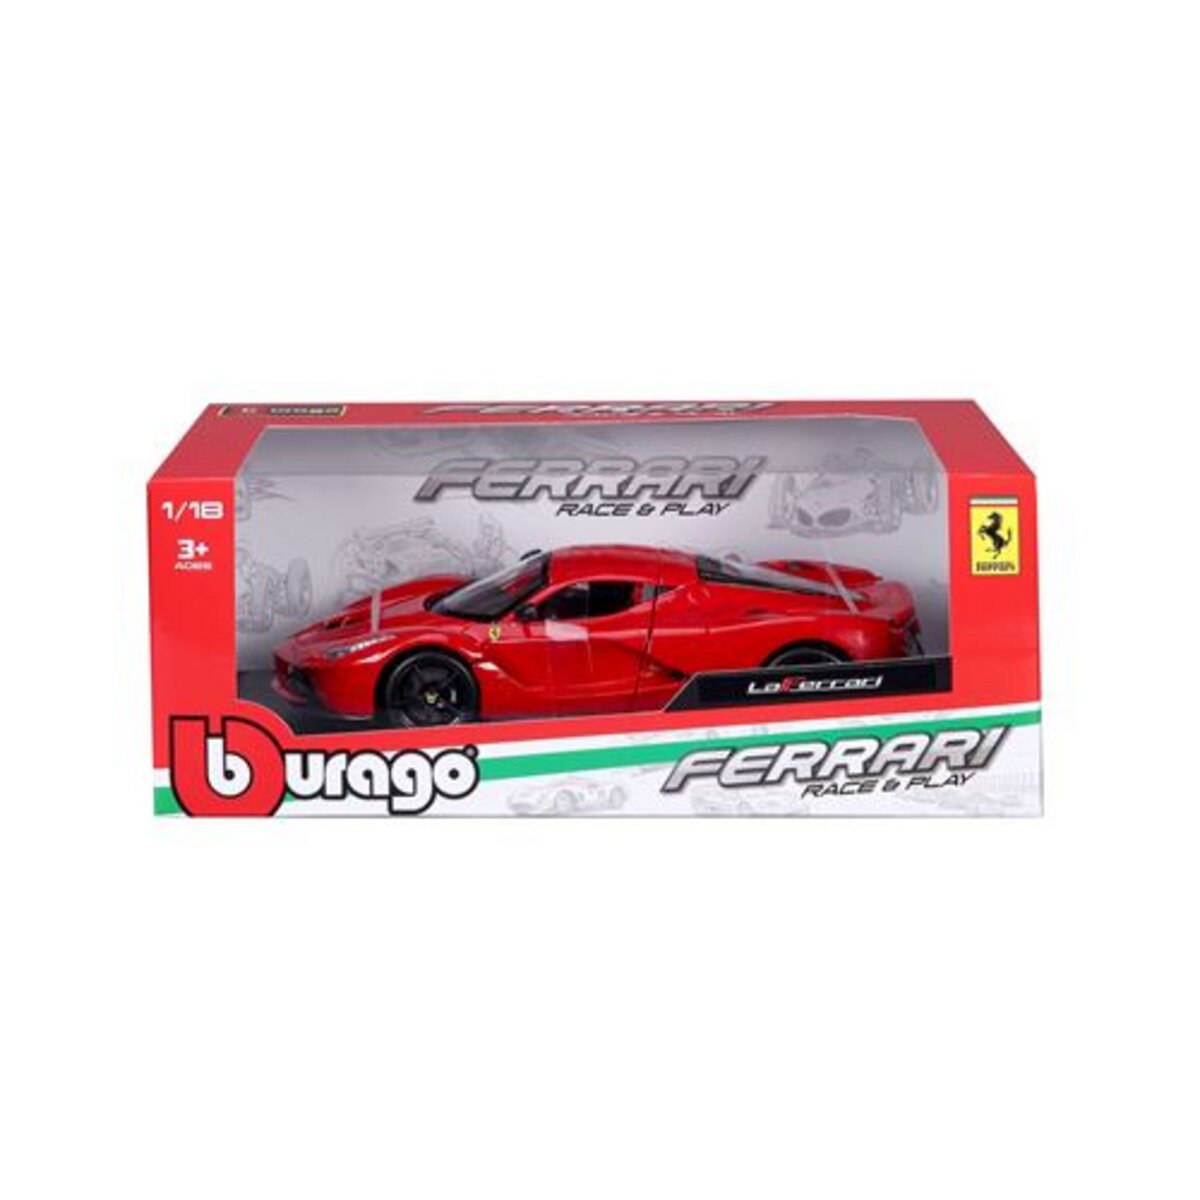 BURAGO Voiture Bburago Ferrari à l’échelle 1/18ème Rouge pas cher 